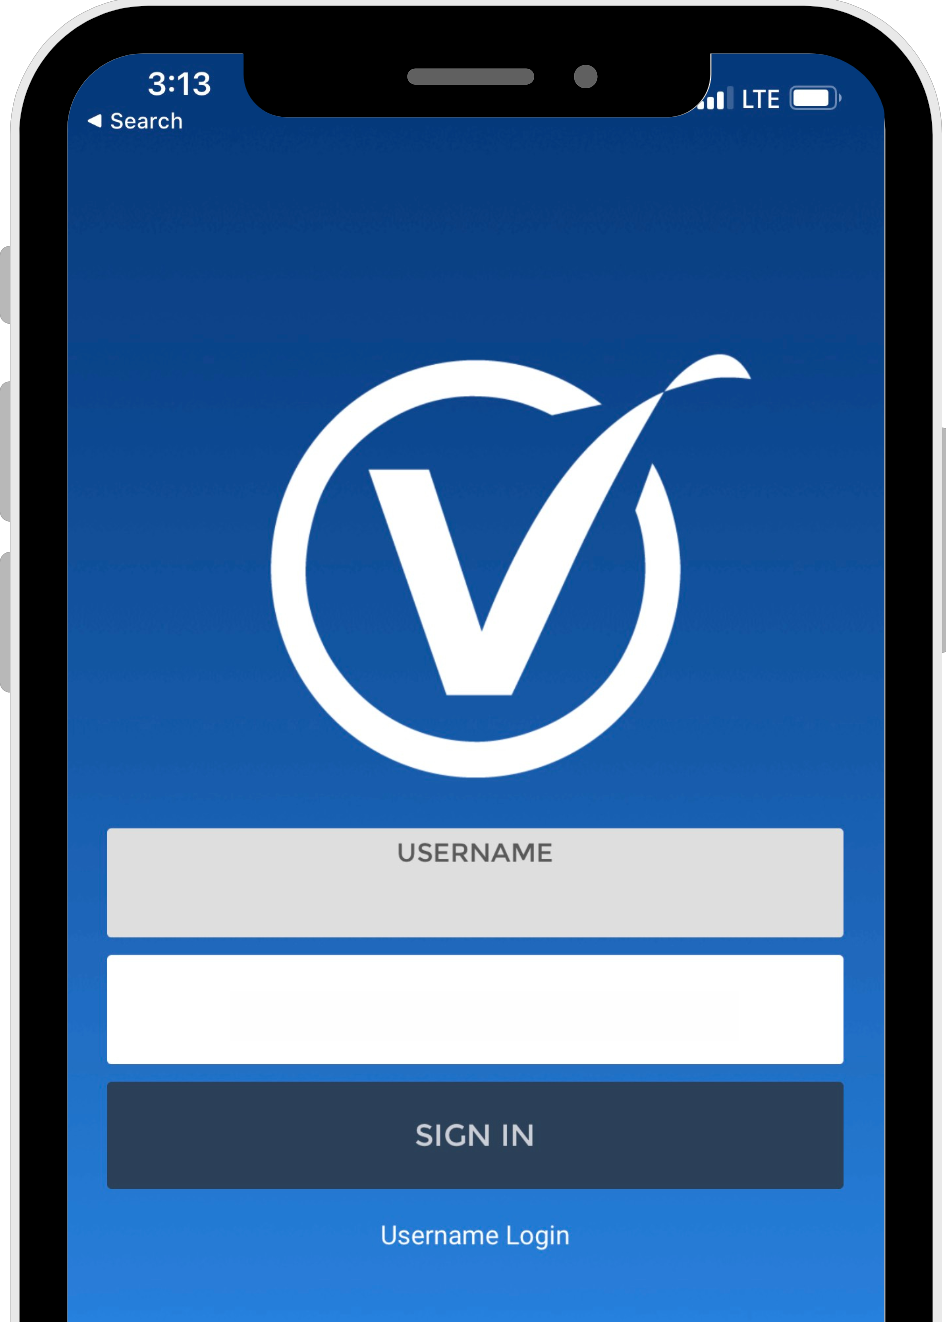 VISIONBank mobile banking app